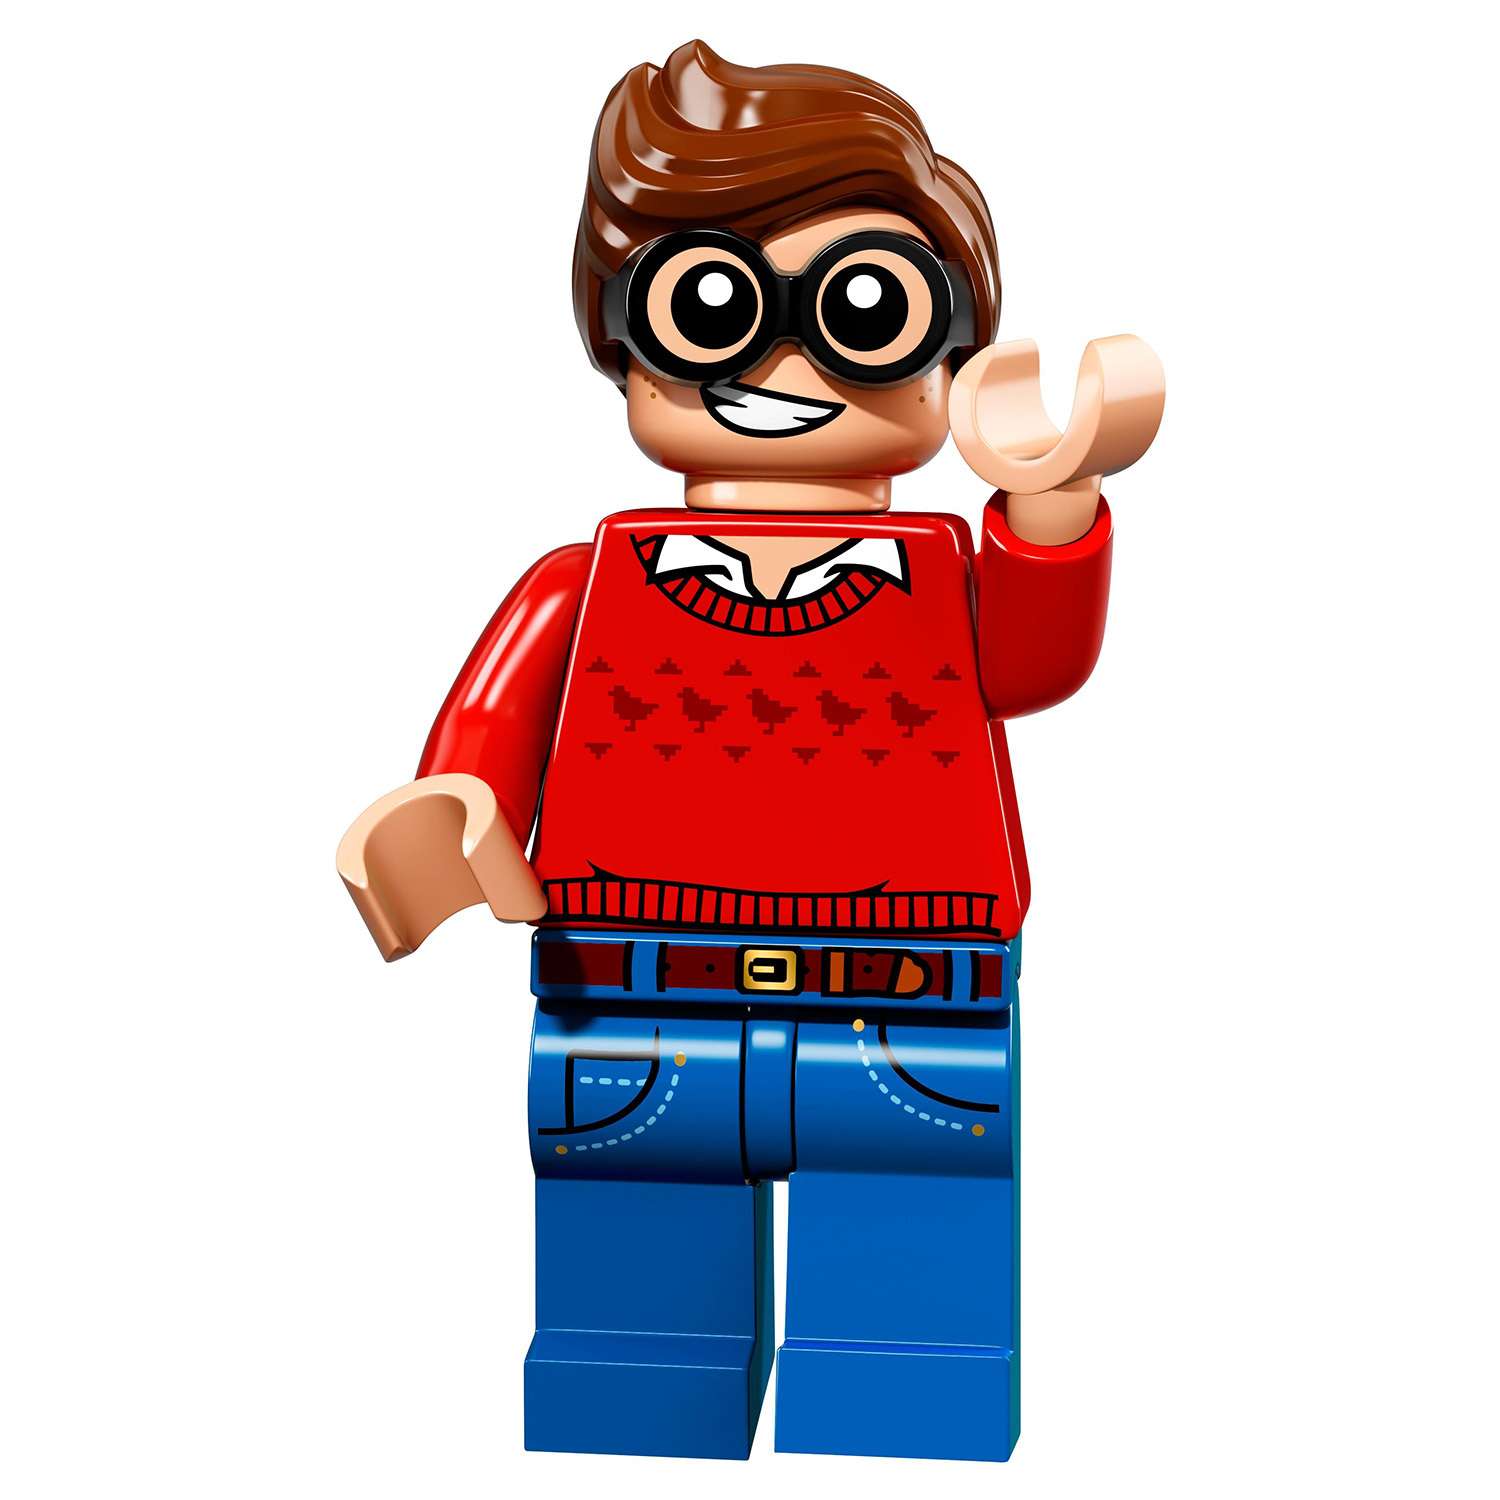 Конструктор LEGO Minifigures Минифигурки ФИЛЬМ: БЭТМЕН (71017) в ассортименте - фото 4